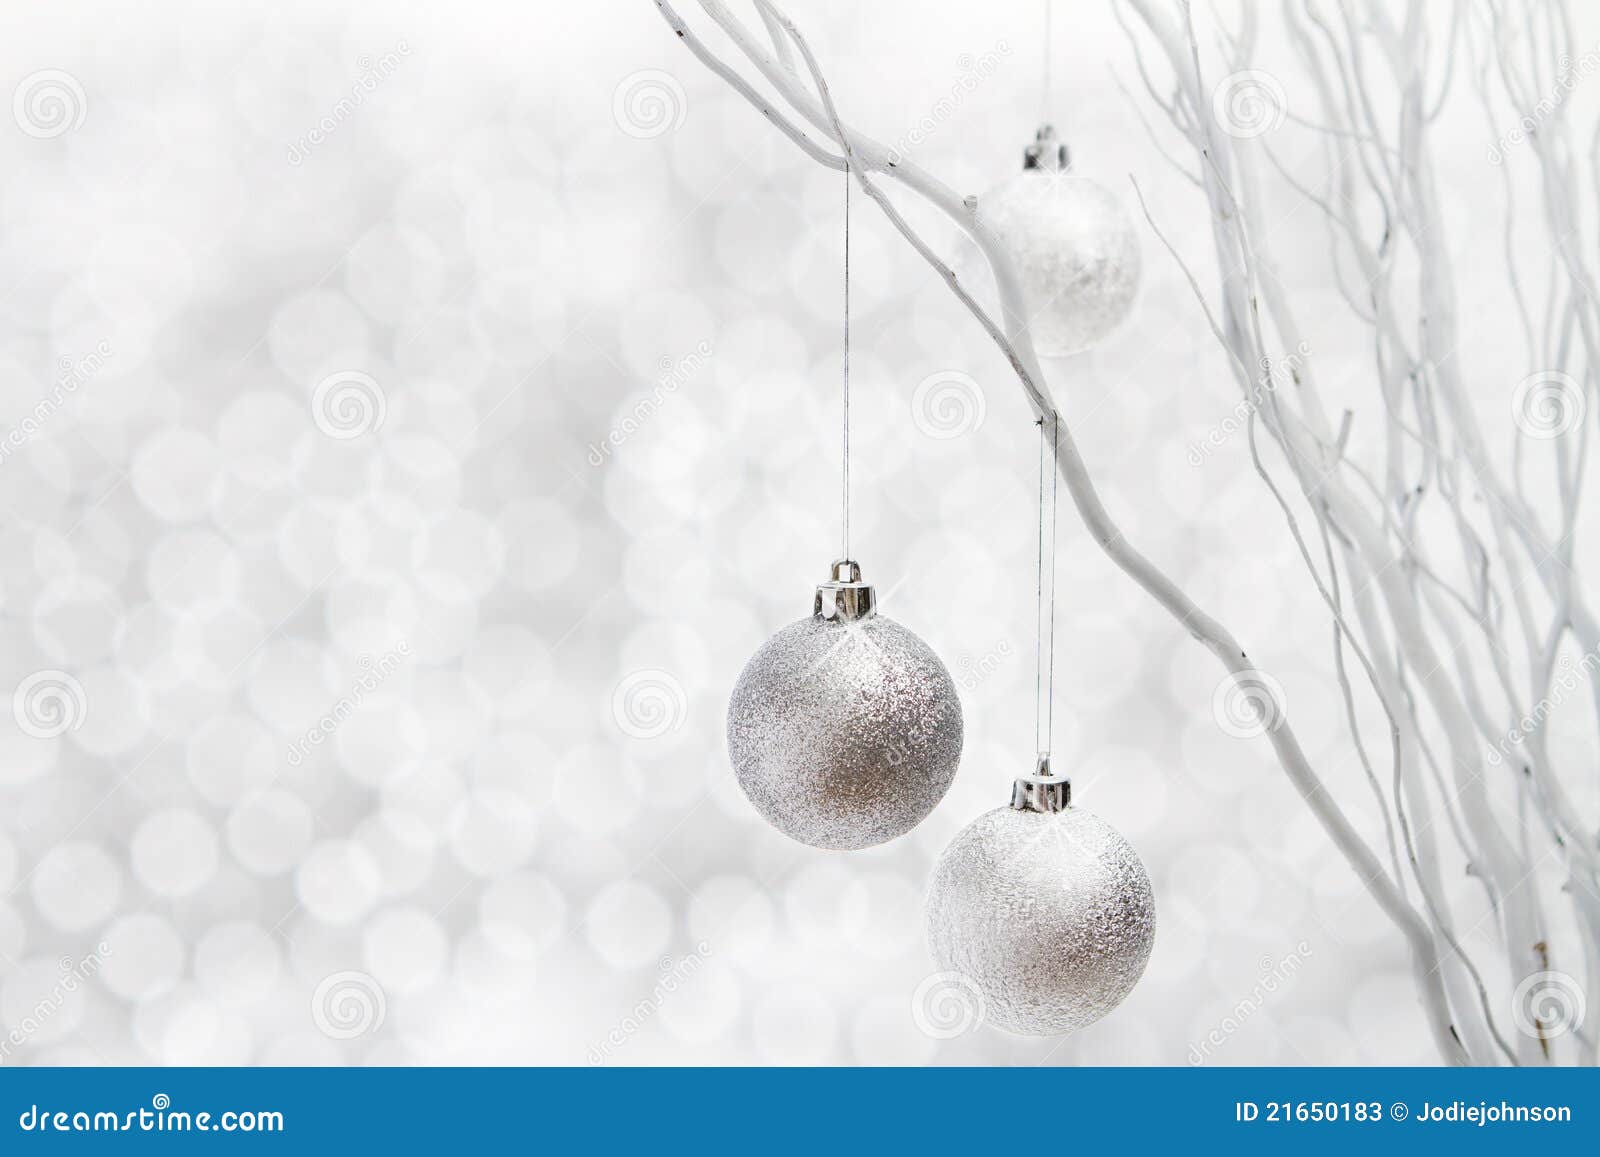 Nền trắng và những chiếc bóng bạc lấp lánh như phiên bản mùa đông của cảnh đêm sao. Tất cả tạo nên không gian Giáng Sinh ấm áp và lãng mạn, mang đến cảm giác thật bình yên và hạnh phúc.